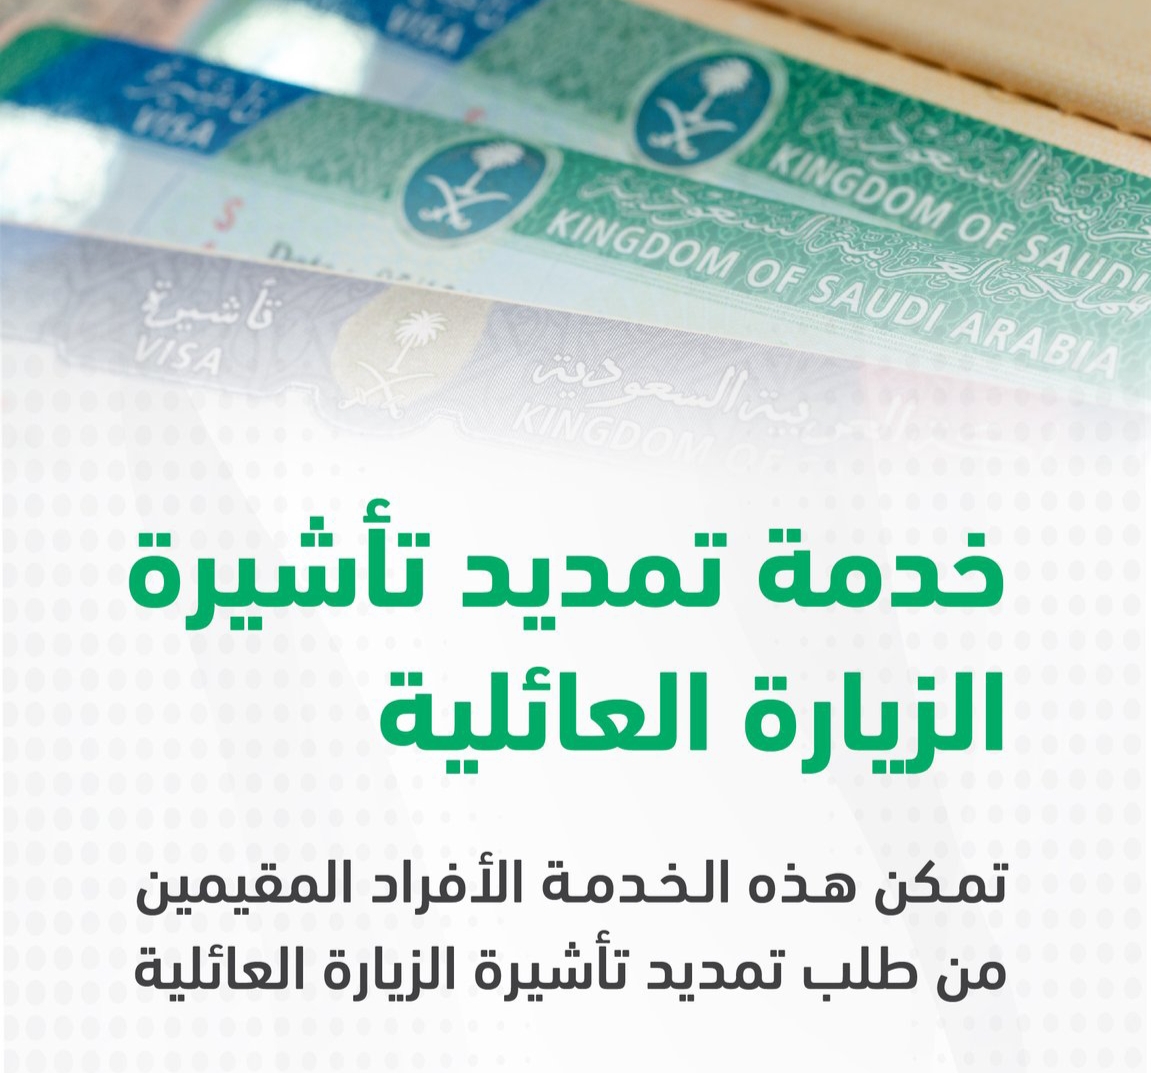 كيفية تمديد تأشيرة الزيارة في السعودية عبر منصة أبشر لعام ١٤٤٤ هـ وما هي الشروط والرسوم للتمديد